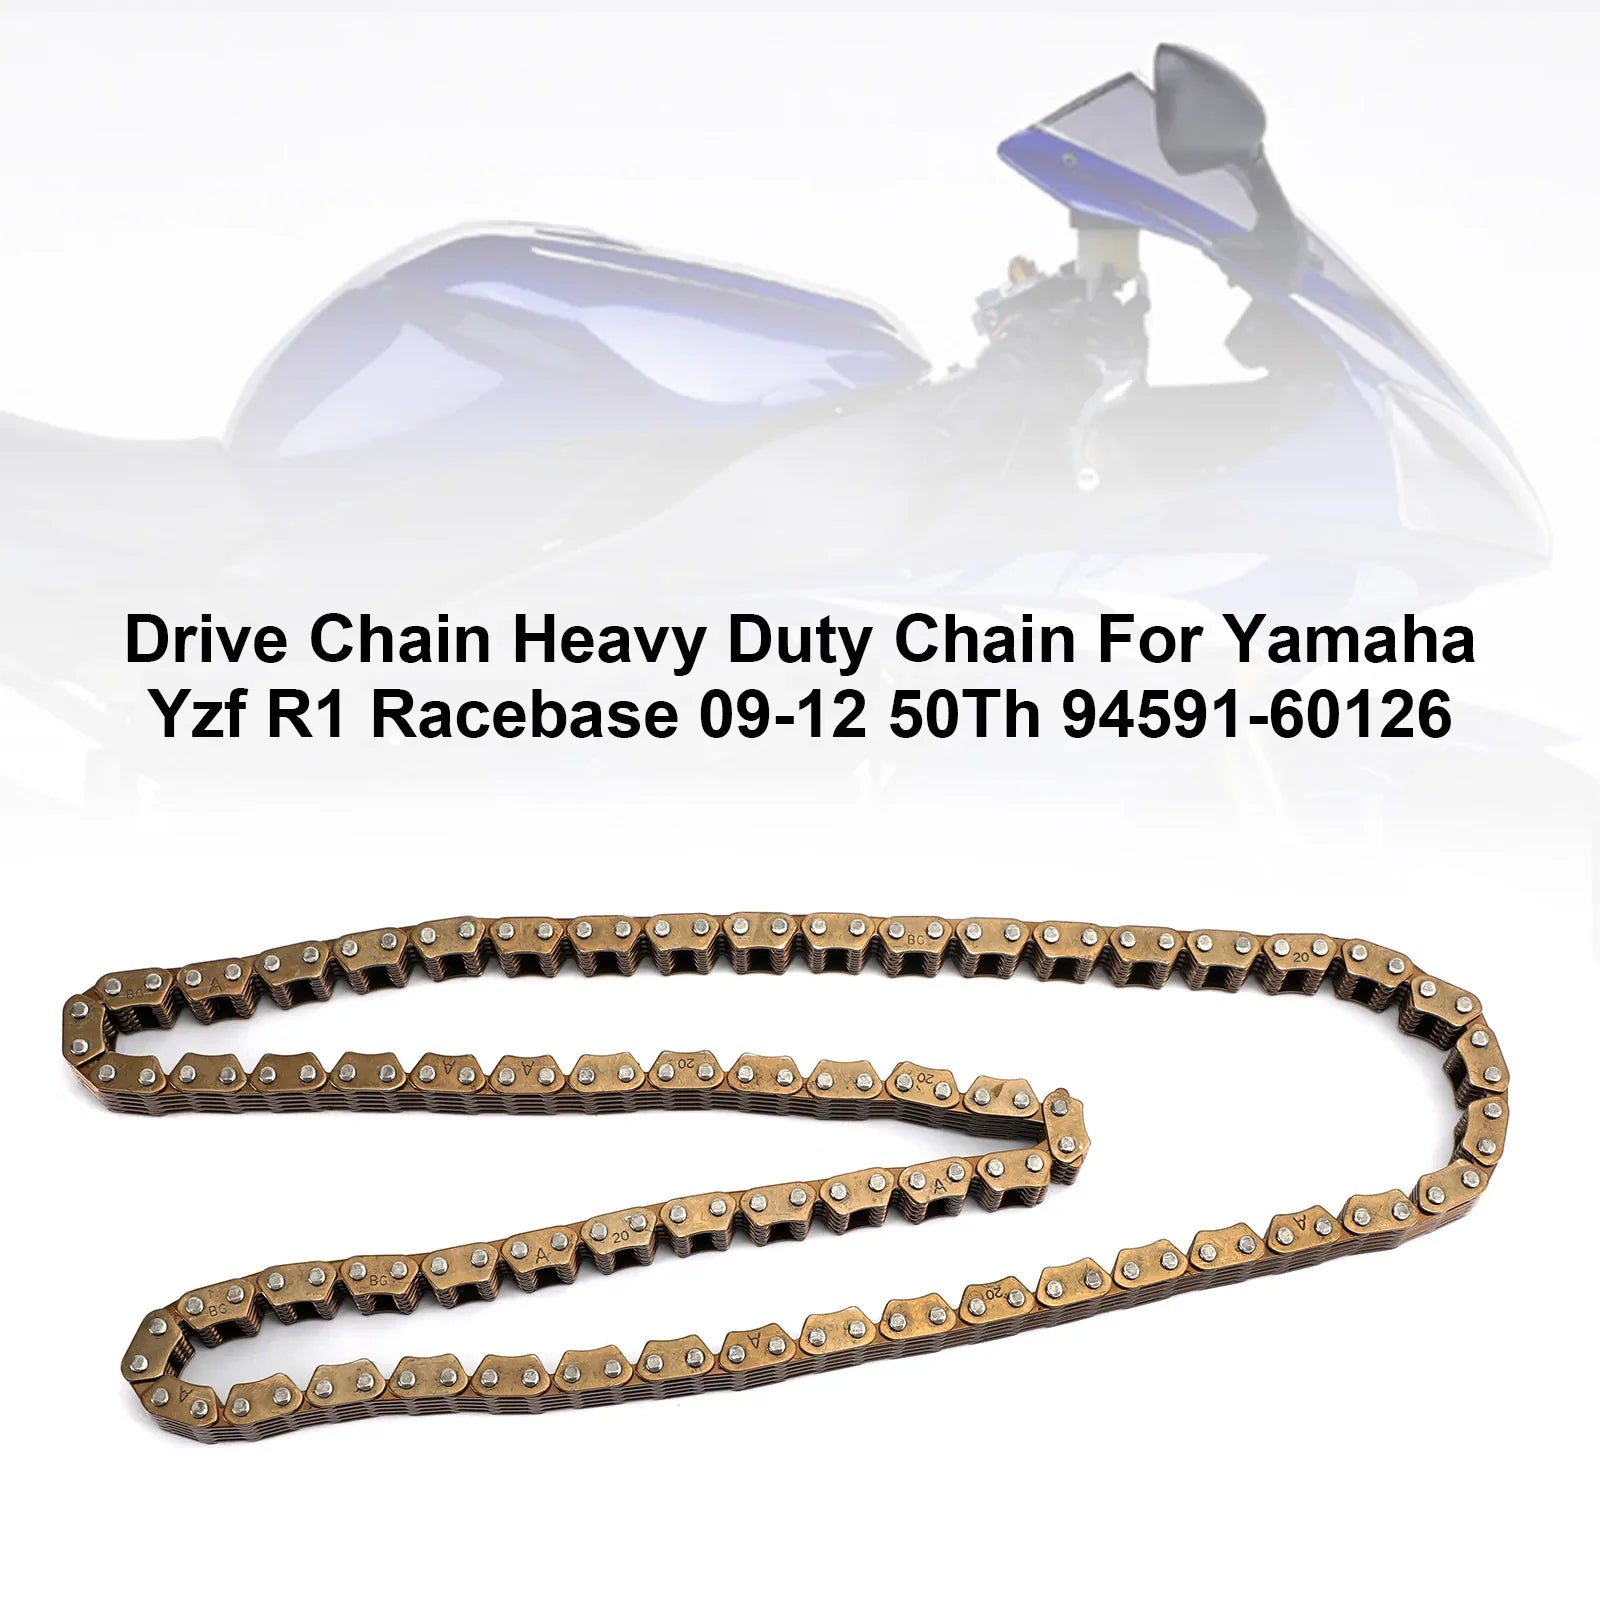 2009-2012 Yamaha Yzf R1 Racebase 50Th 94591-60126 Cadena de distribución resistente